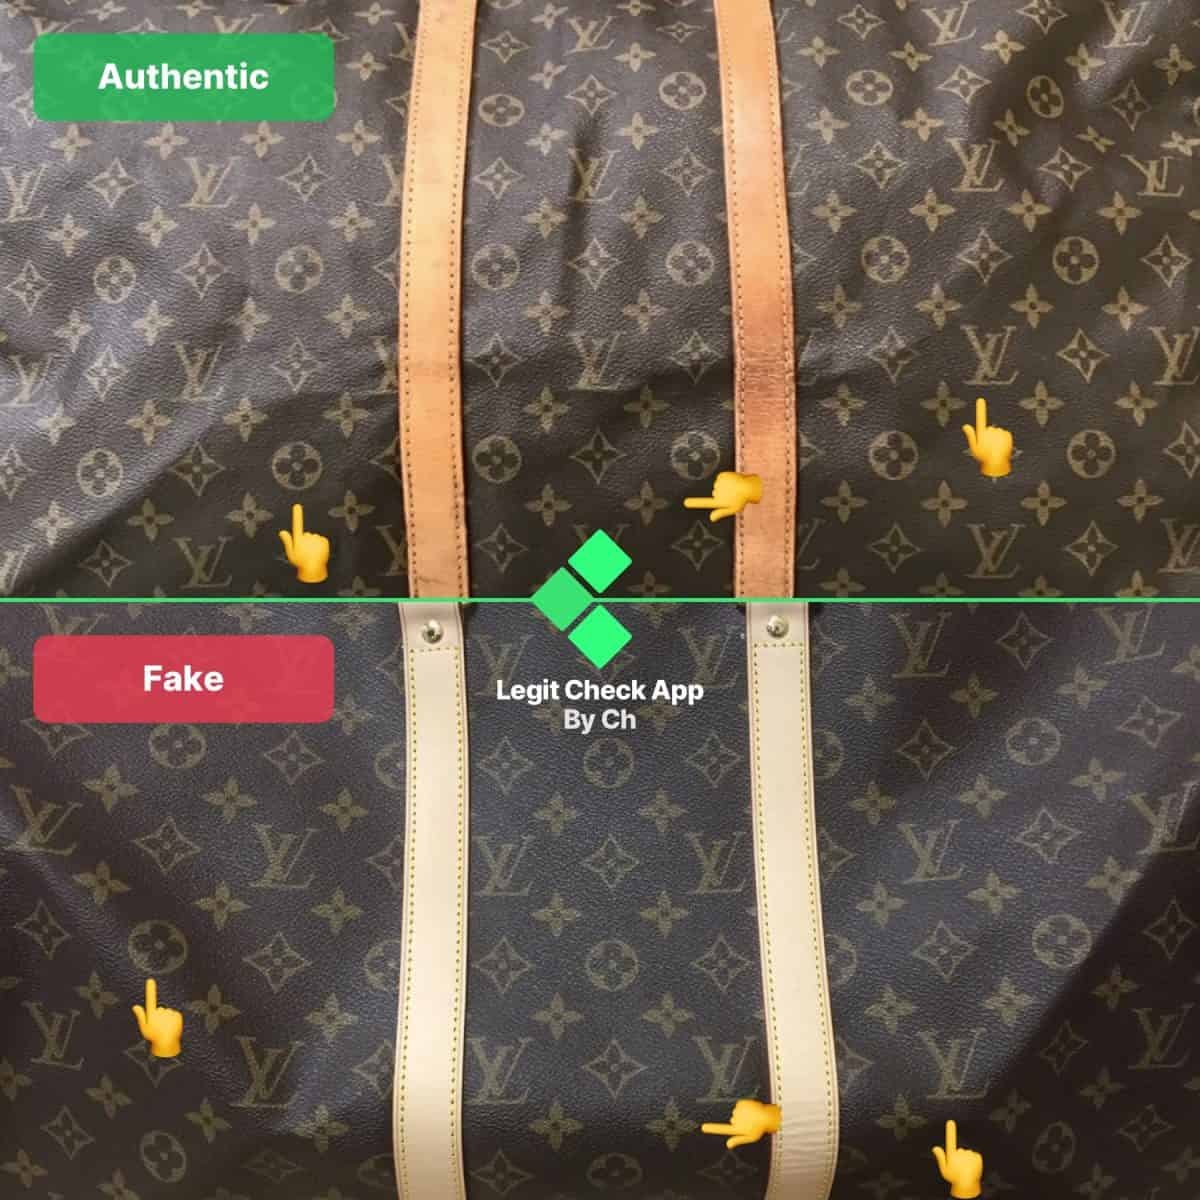 Louis Vuitton Belt - Real vs. Fake Comparison 